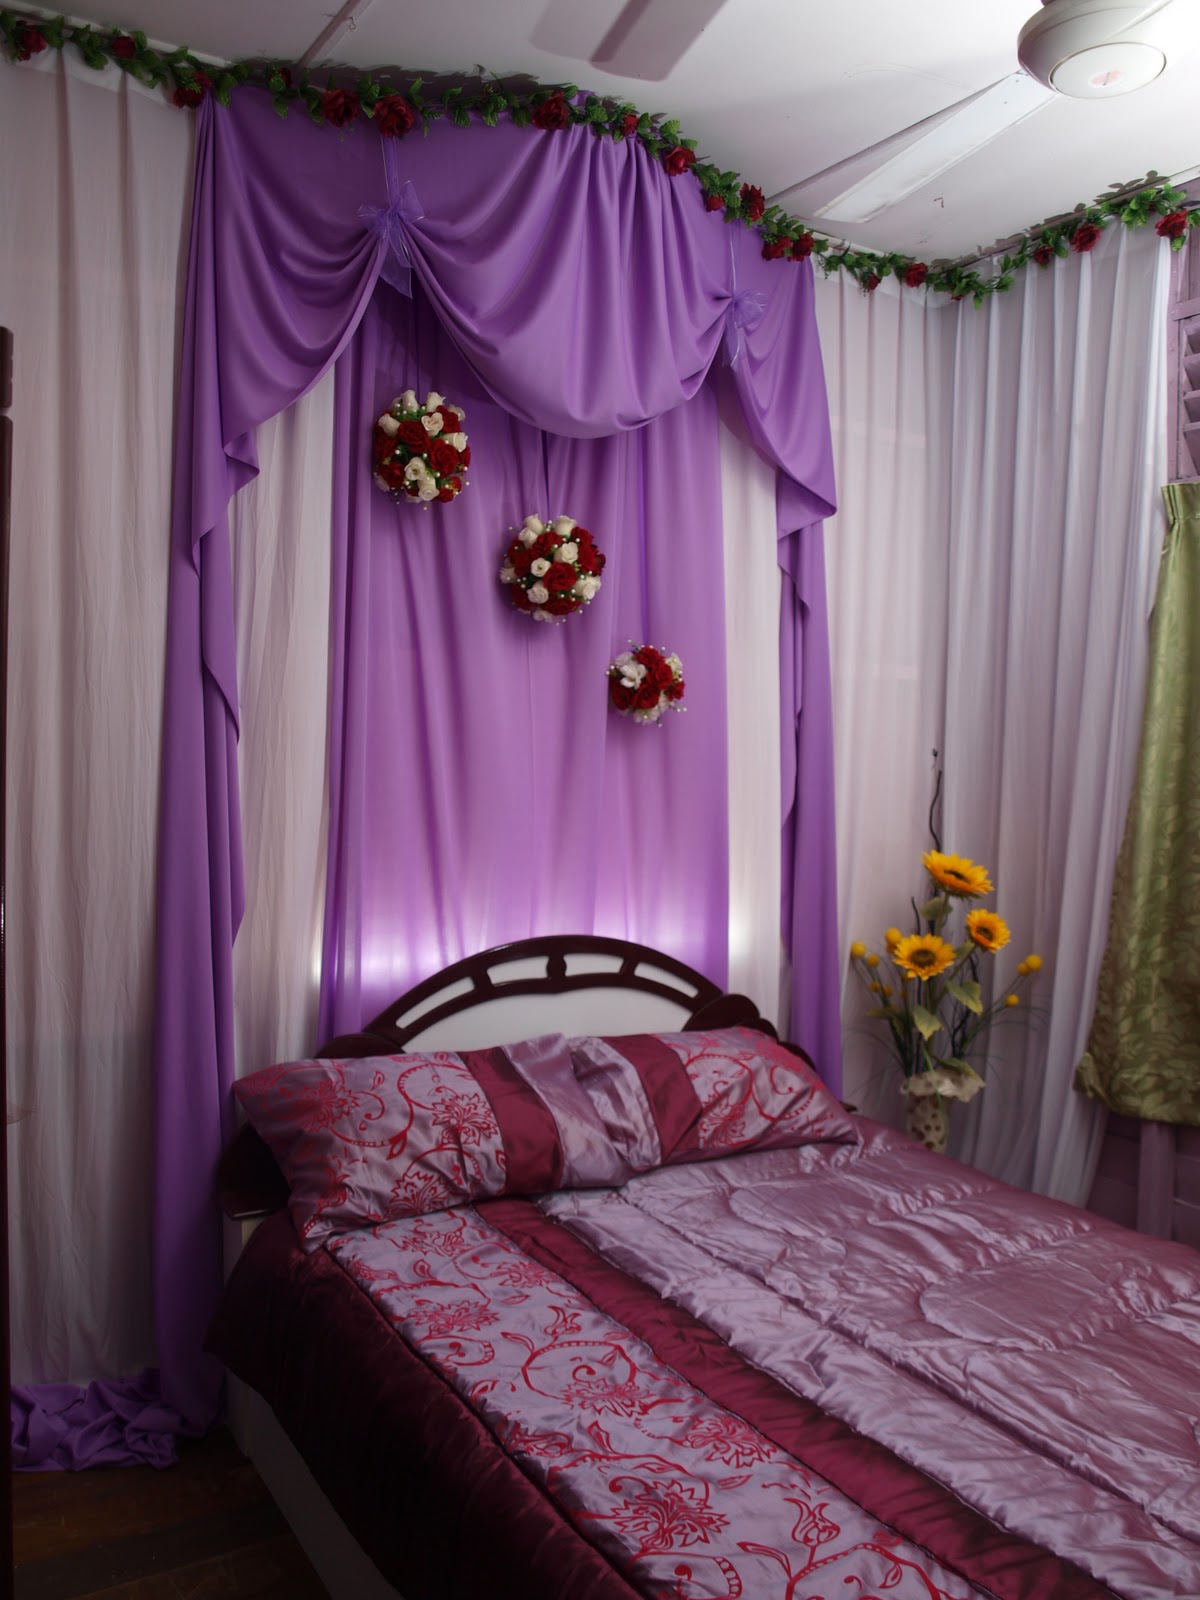 Photography & bridal services: Contoh bilik pengantin